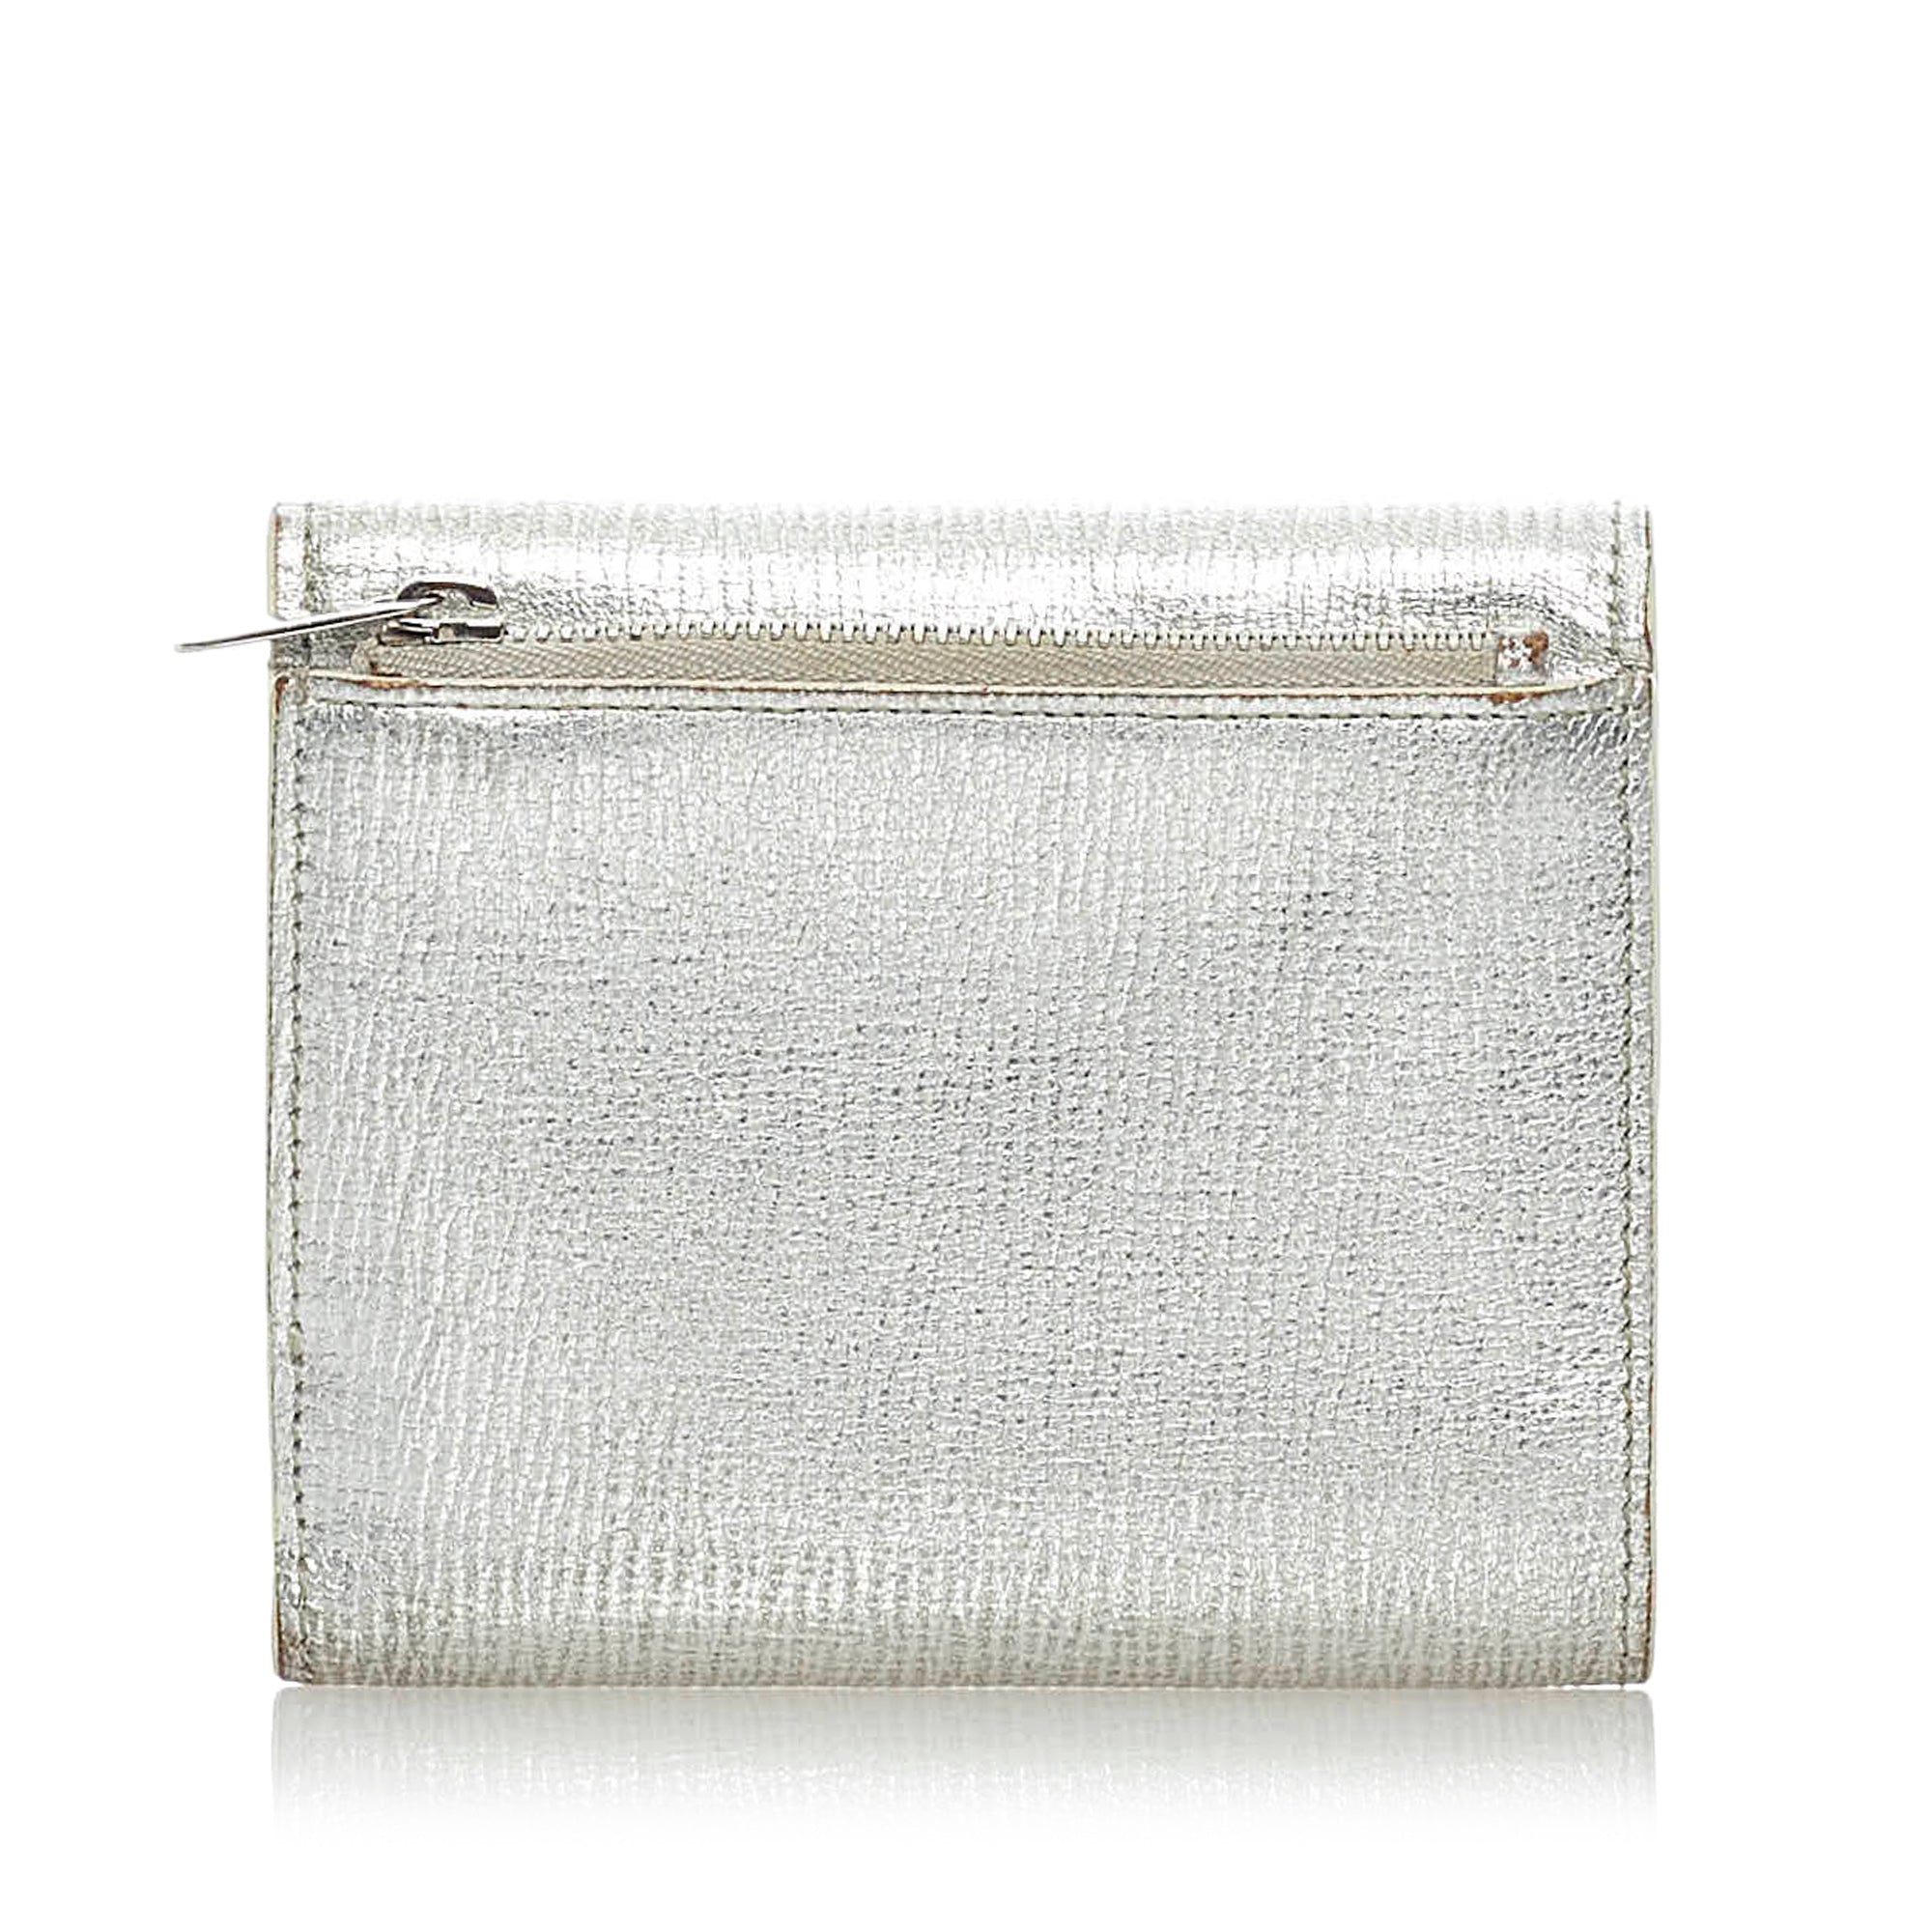 Dior Diorama silver bag.  Dior diorama bag, Handbag boutique, Bags